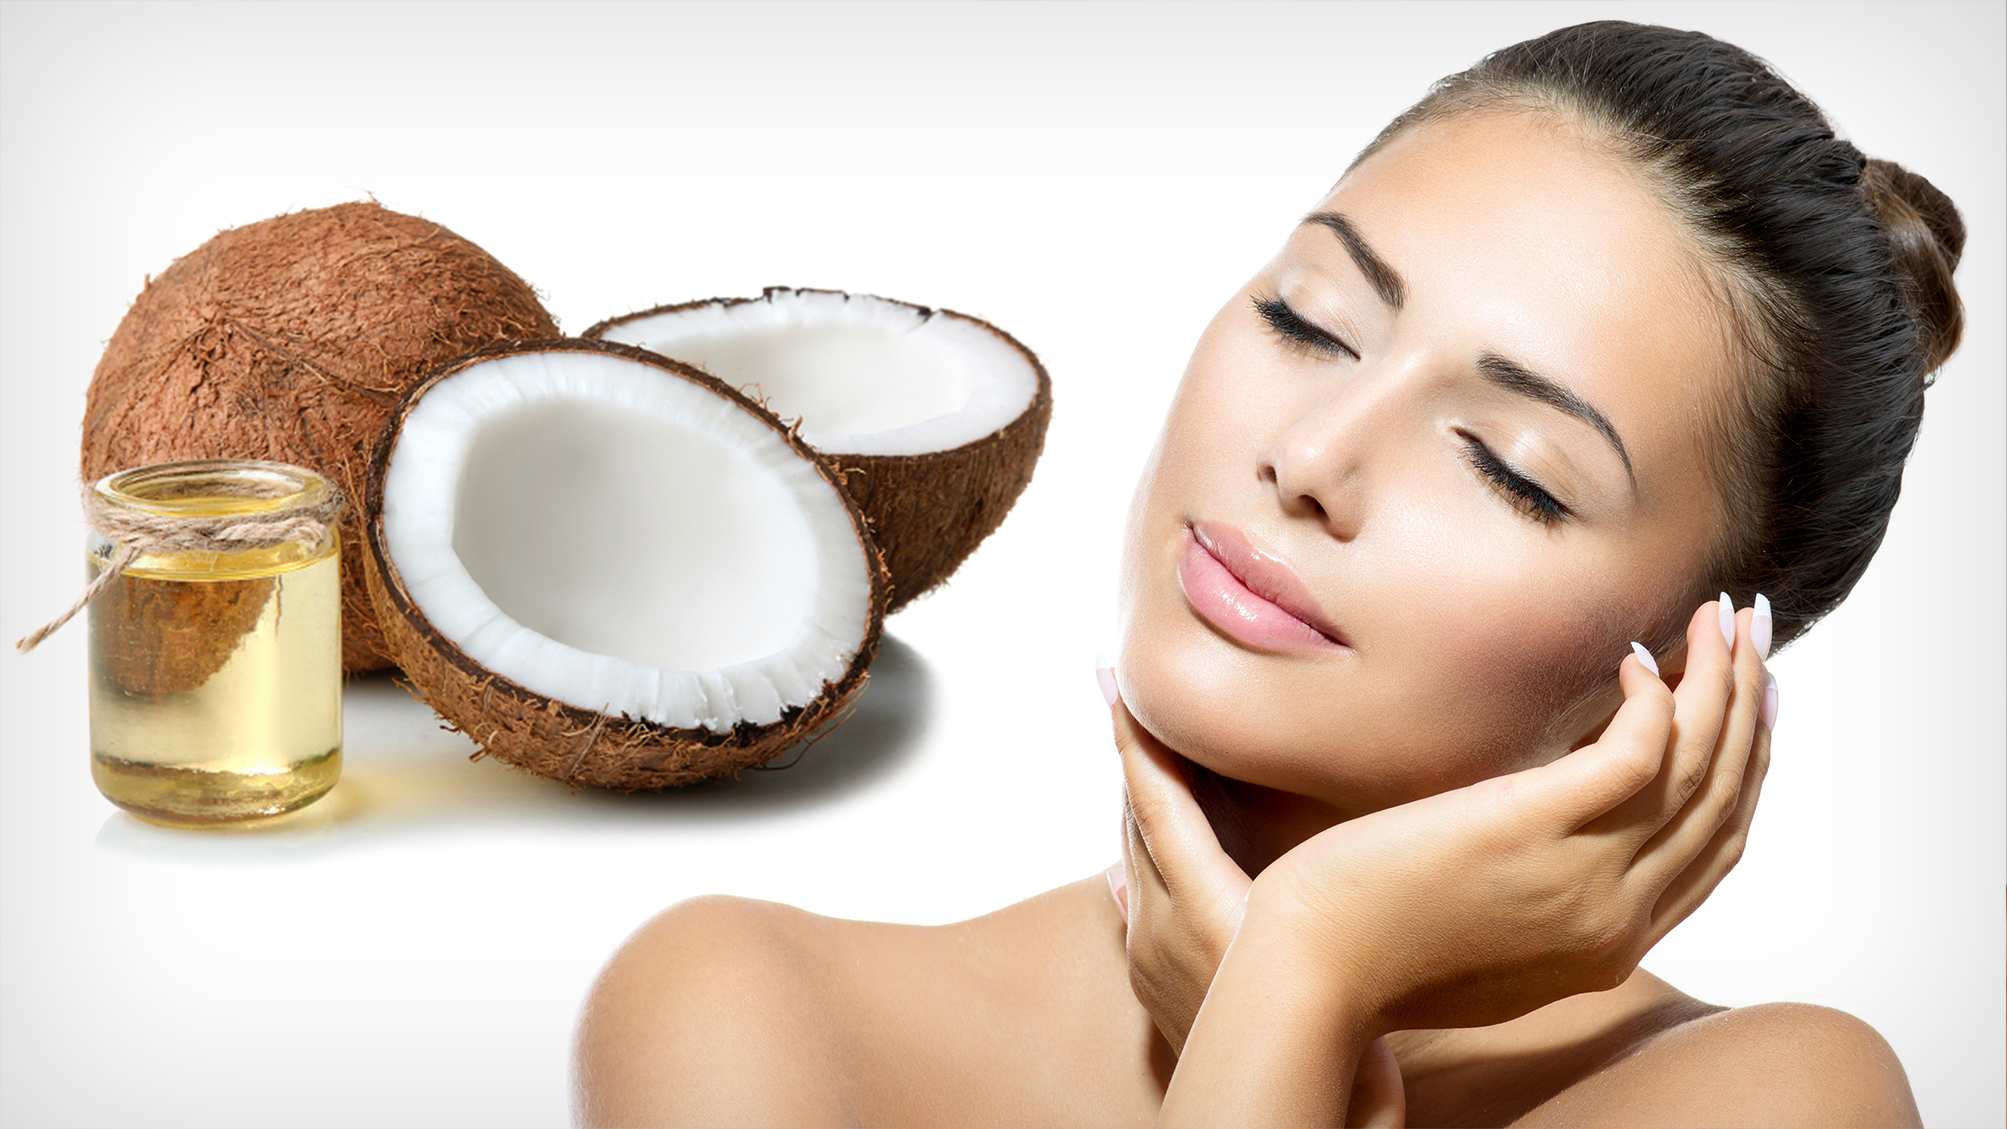 Польза кокосового масла — 10 доказанных свойств для организма от его применения, а также вред и противопоказания